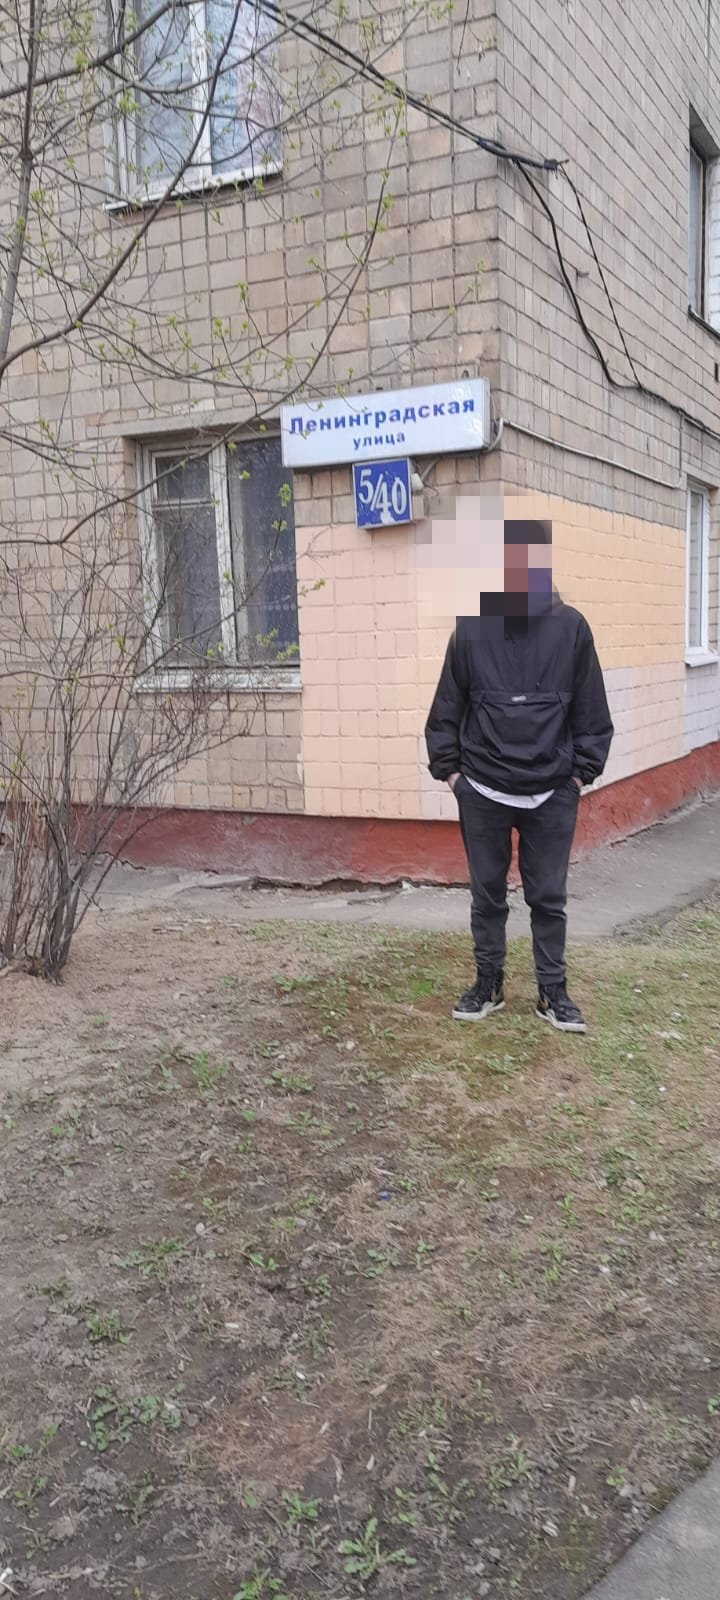 На Киевском вокзале столицы задержан  ранее судимый 24-летний гражданин с запрещенным веществом